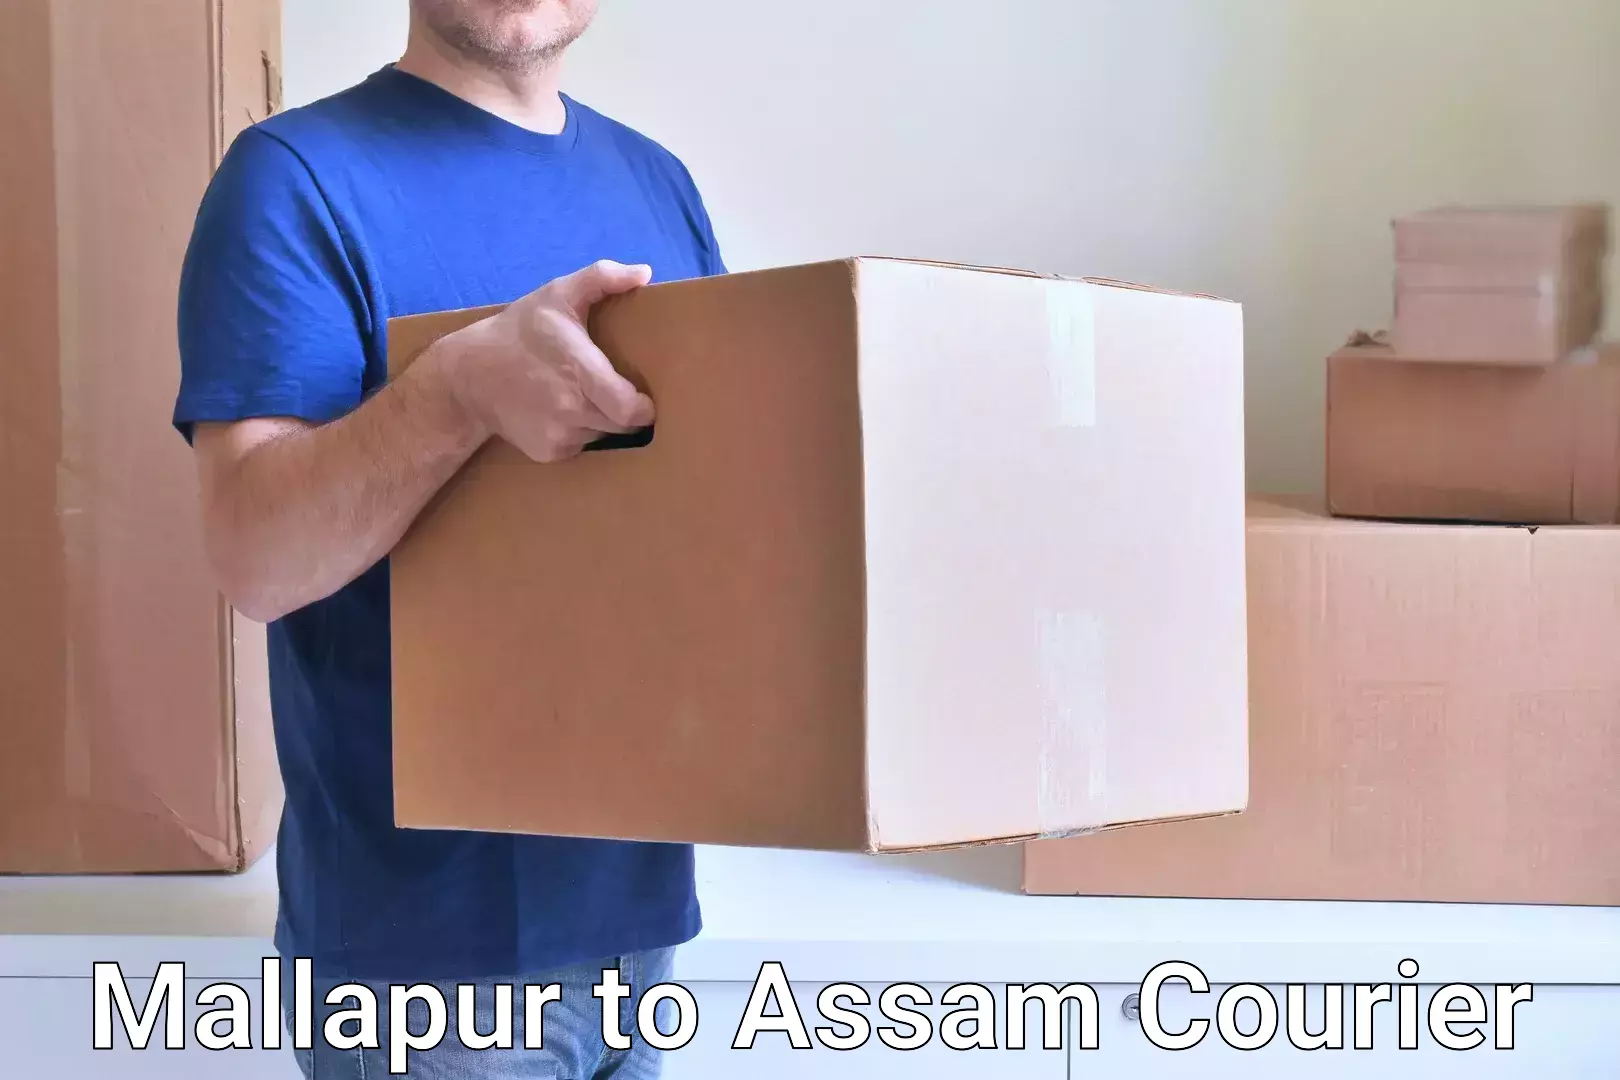 Door-to-door freight service Mallapur to Assam